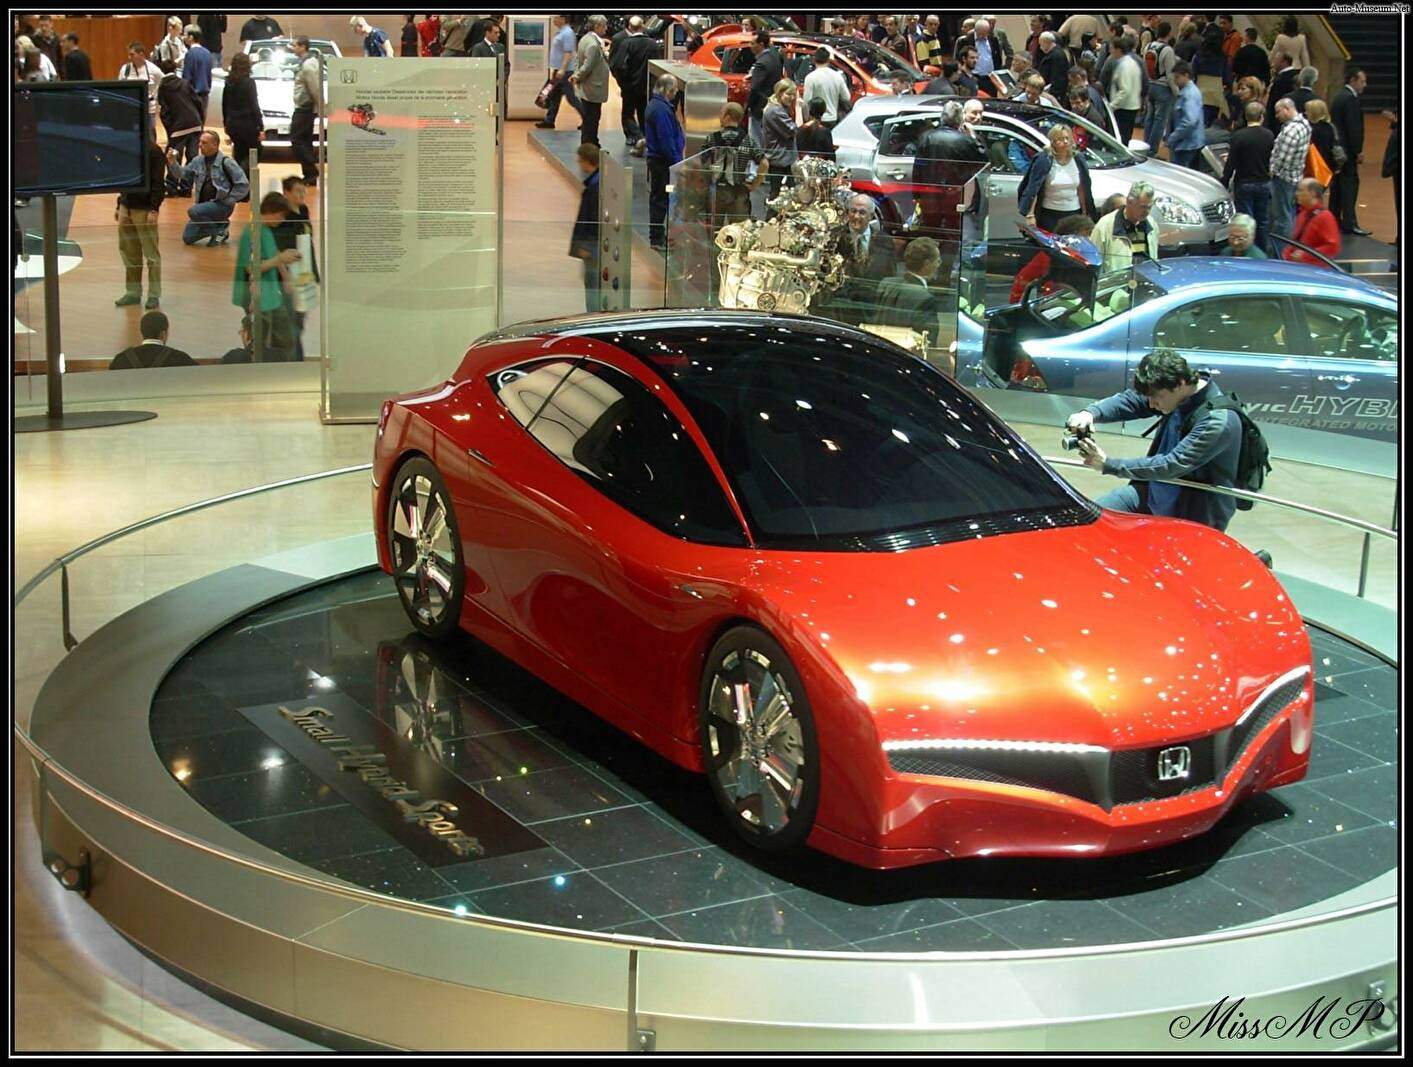 Honda Small Hybrid Sports Concept (2007),  ajouté par MissMP